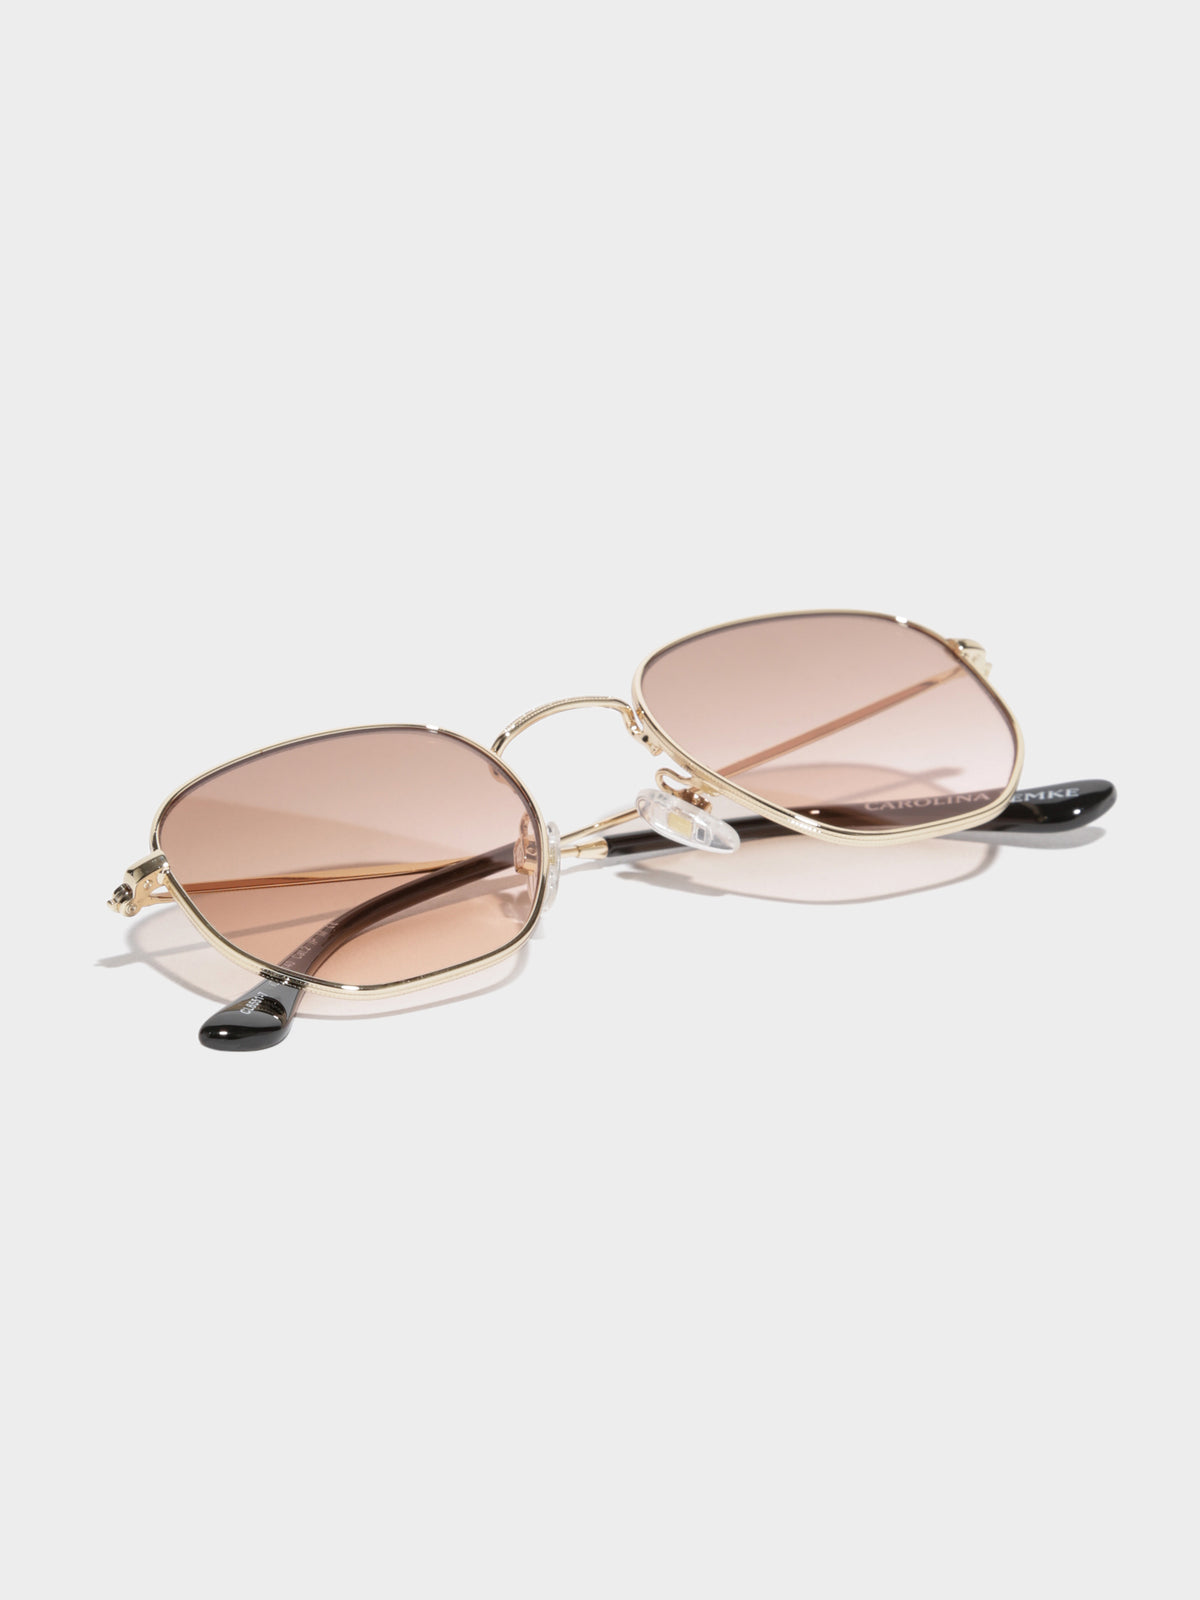 CL6551 Carangie Sunglasses in Gold